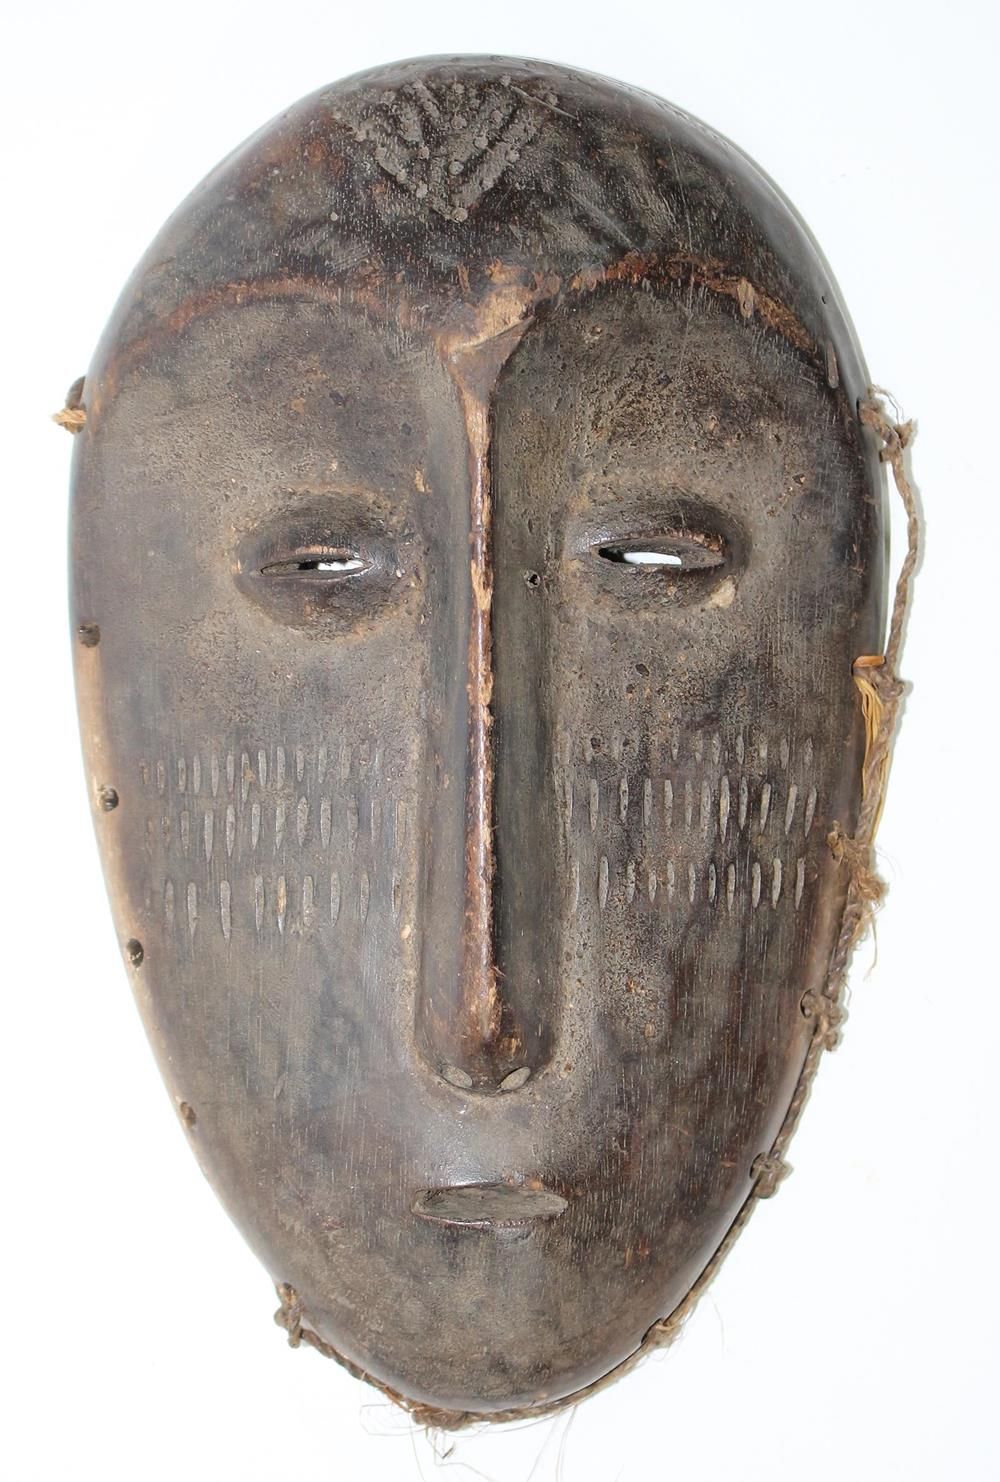 Lega Maske 有网状鼻子的旧面具。额头和脸颊上的纹身。凸起的眼珠，美丽的岁月痕迹。24厘米。 背面有收藏家的标签。 D